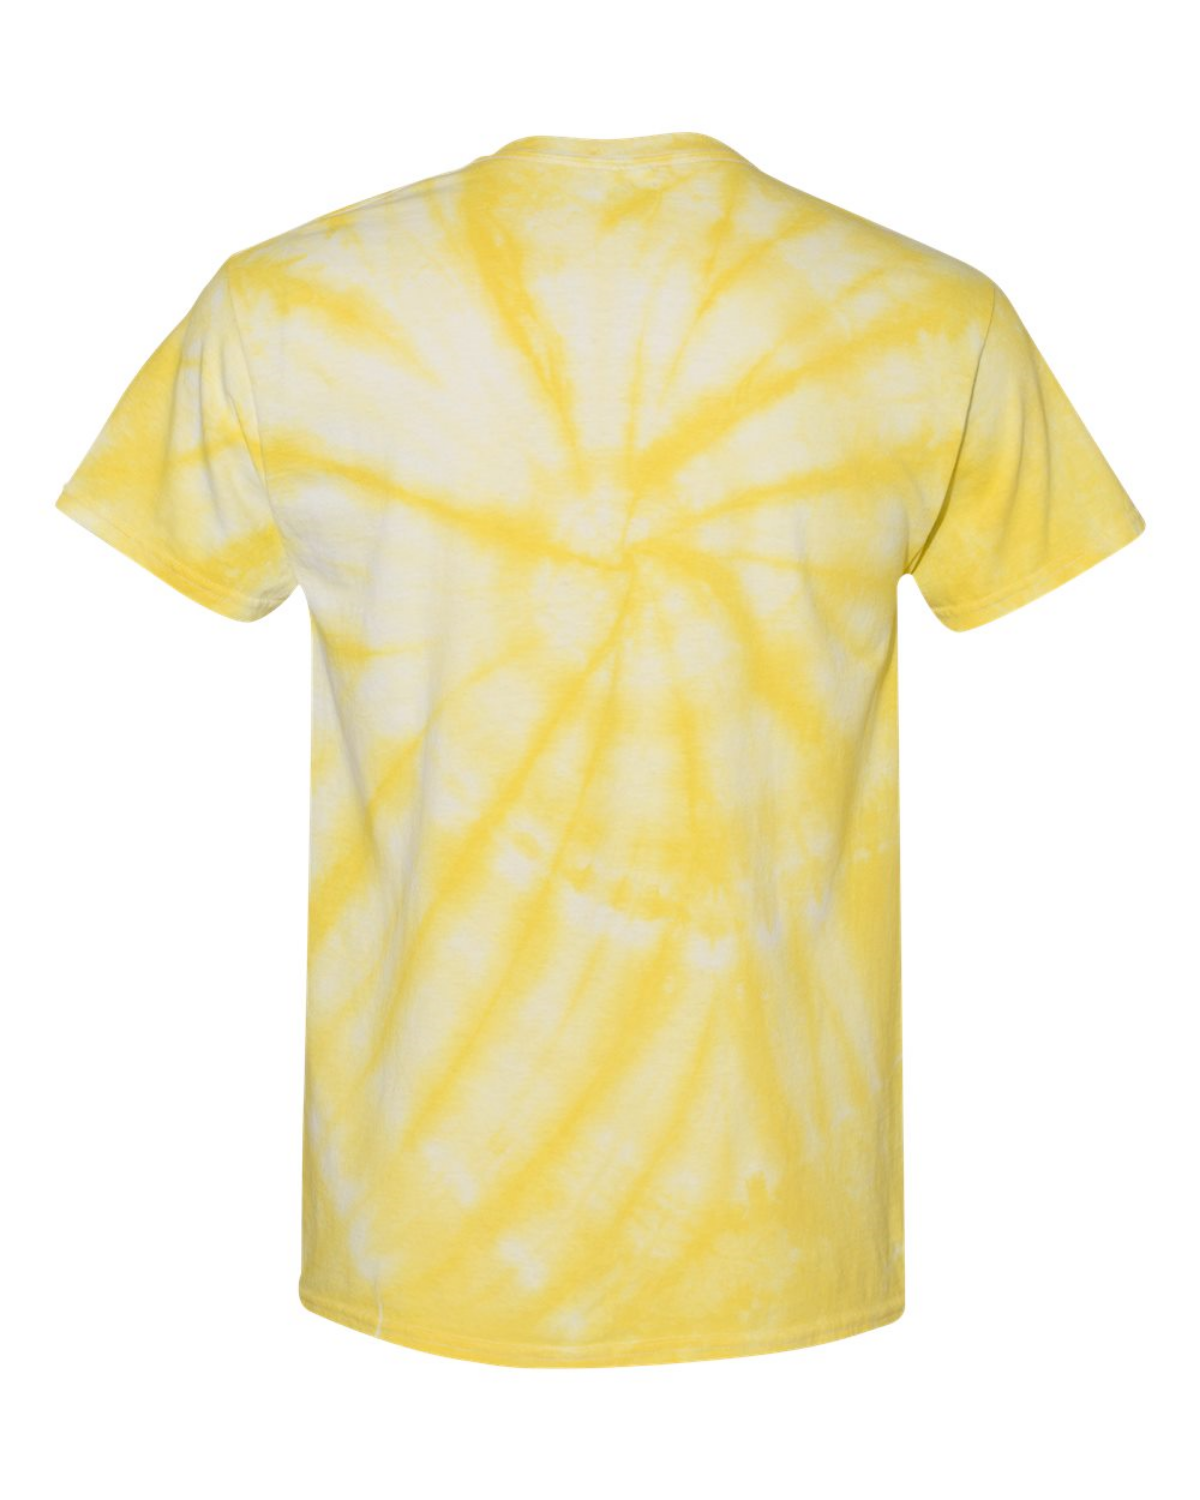 Spongebob Schwammkopf großes Gesicht Tie-Dye T-Shirt mit kurzen Ärmeln